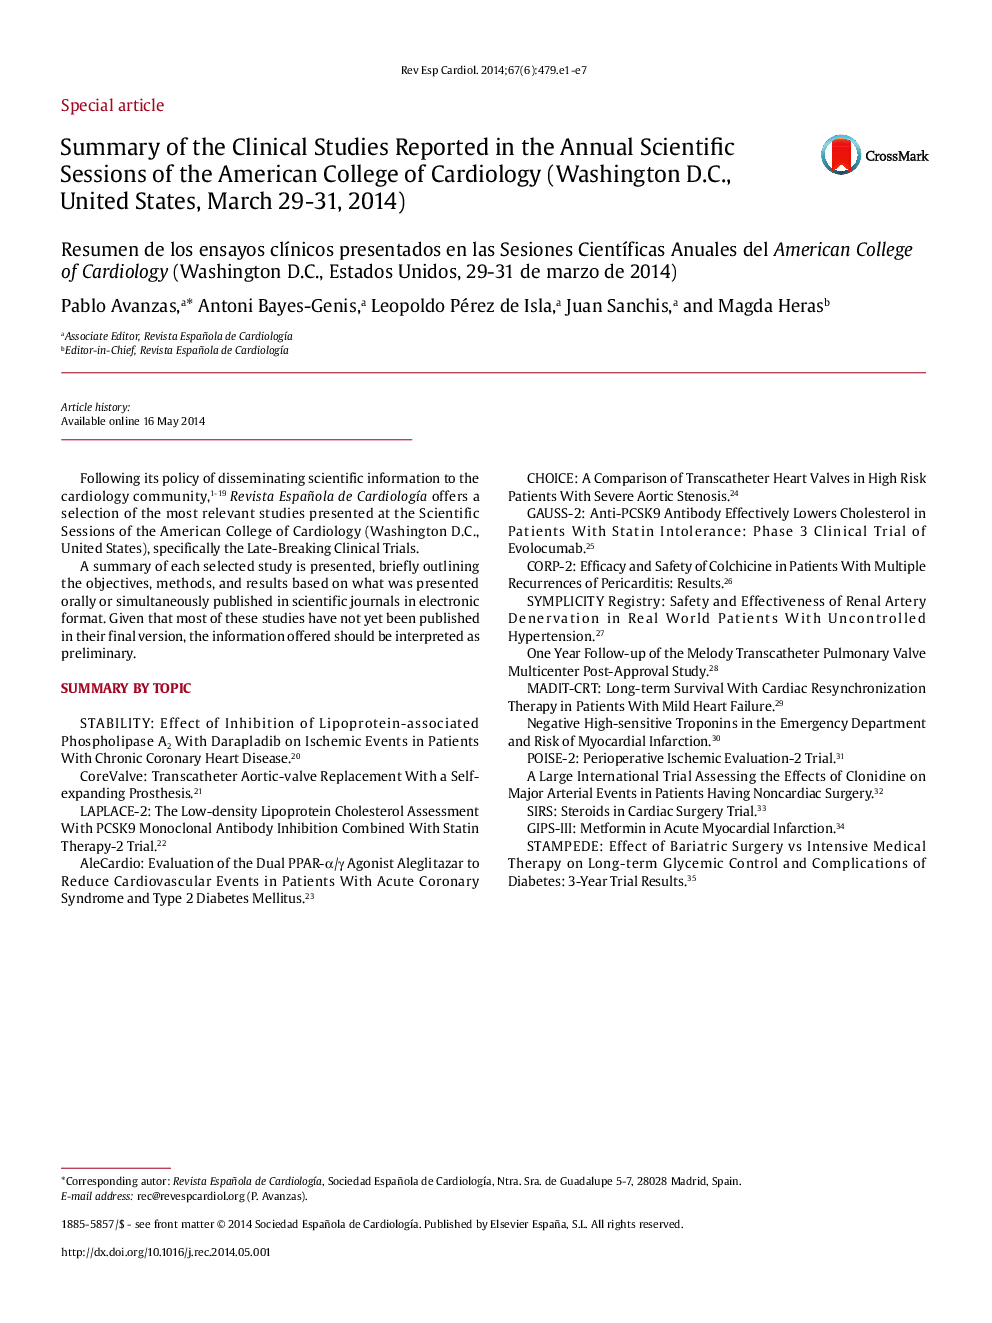 خلاصه ای از مطالعات بالینی گزارش شده در جلسات علمی سالانه کالج قلب آمریکا (واشنگتن دی سی، ایالات متحده، 29 تا 31 مارس 2014) 